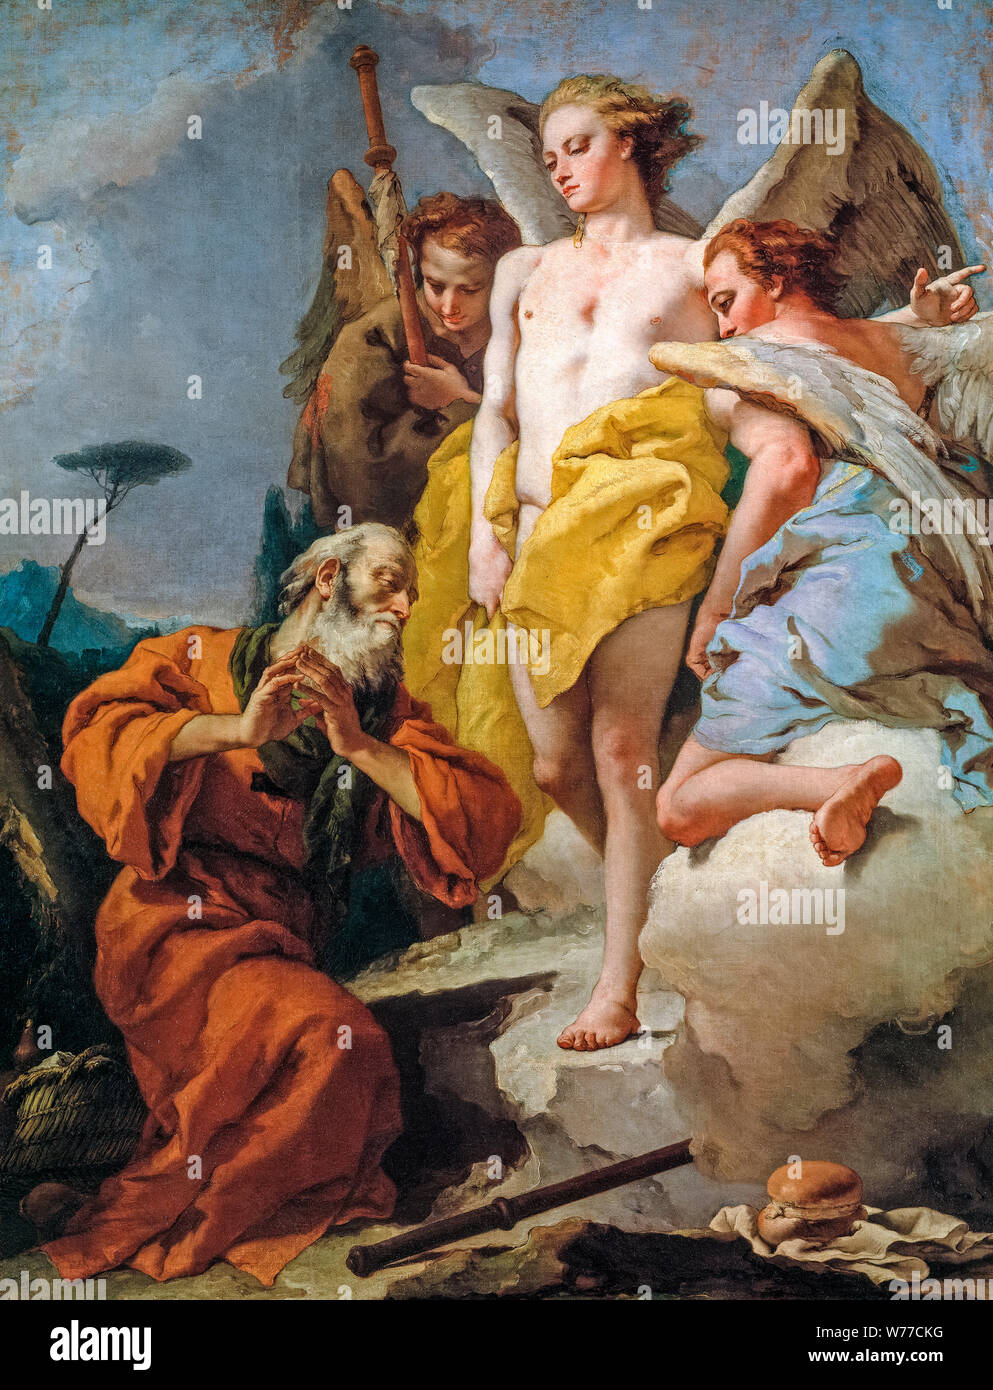 Giovanni Battista Tiepolo, peinture, Abraham et les trois anges, 1730 Banque D'Images